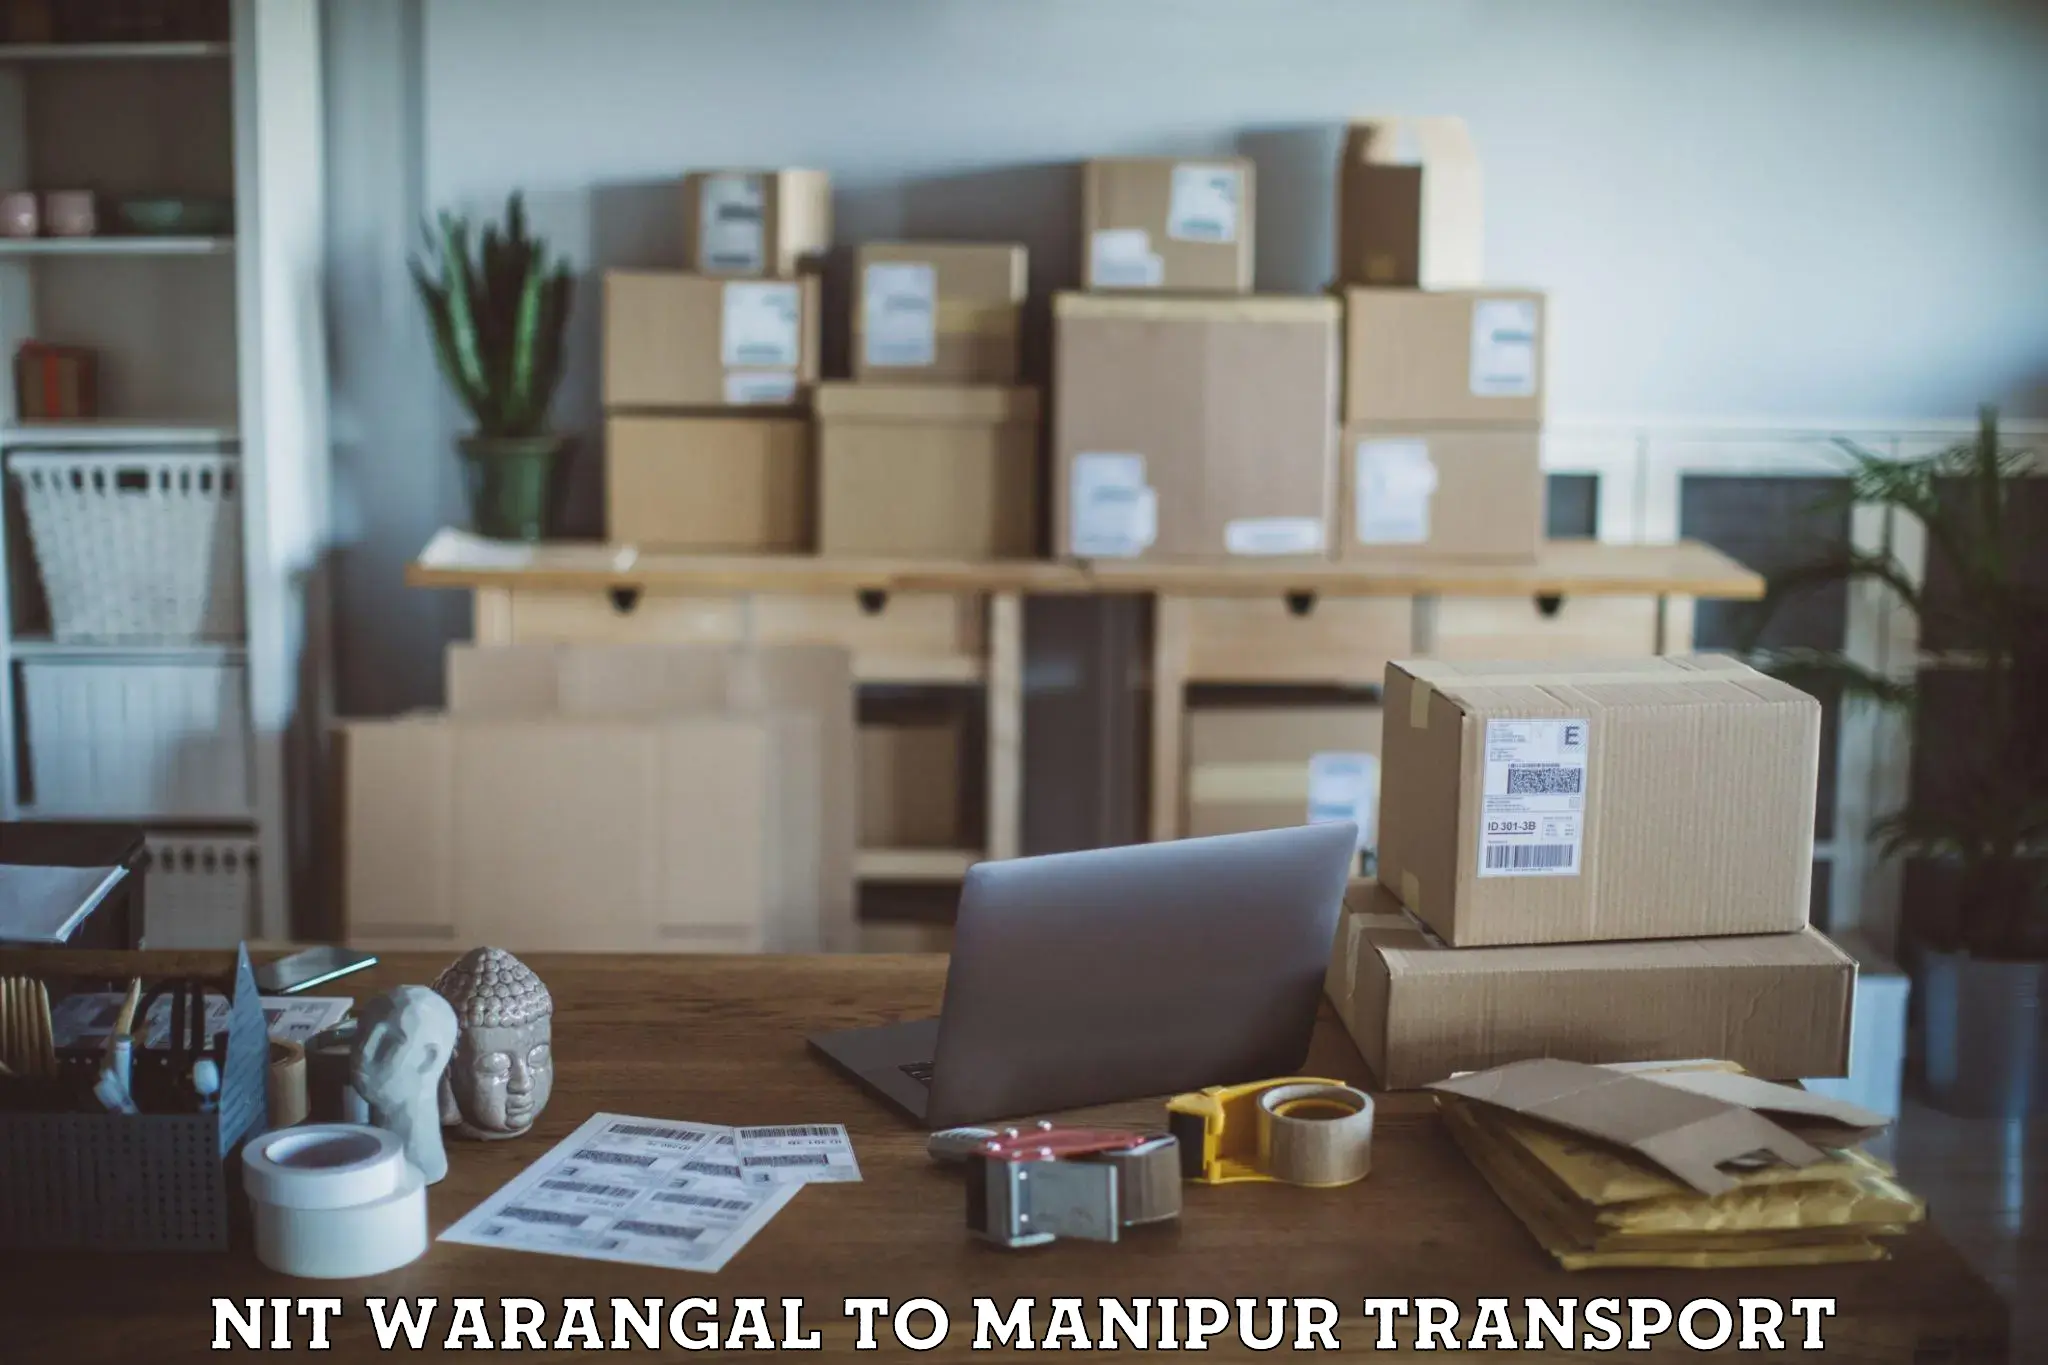 Express transport services NIT Warangal to Manipur